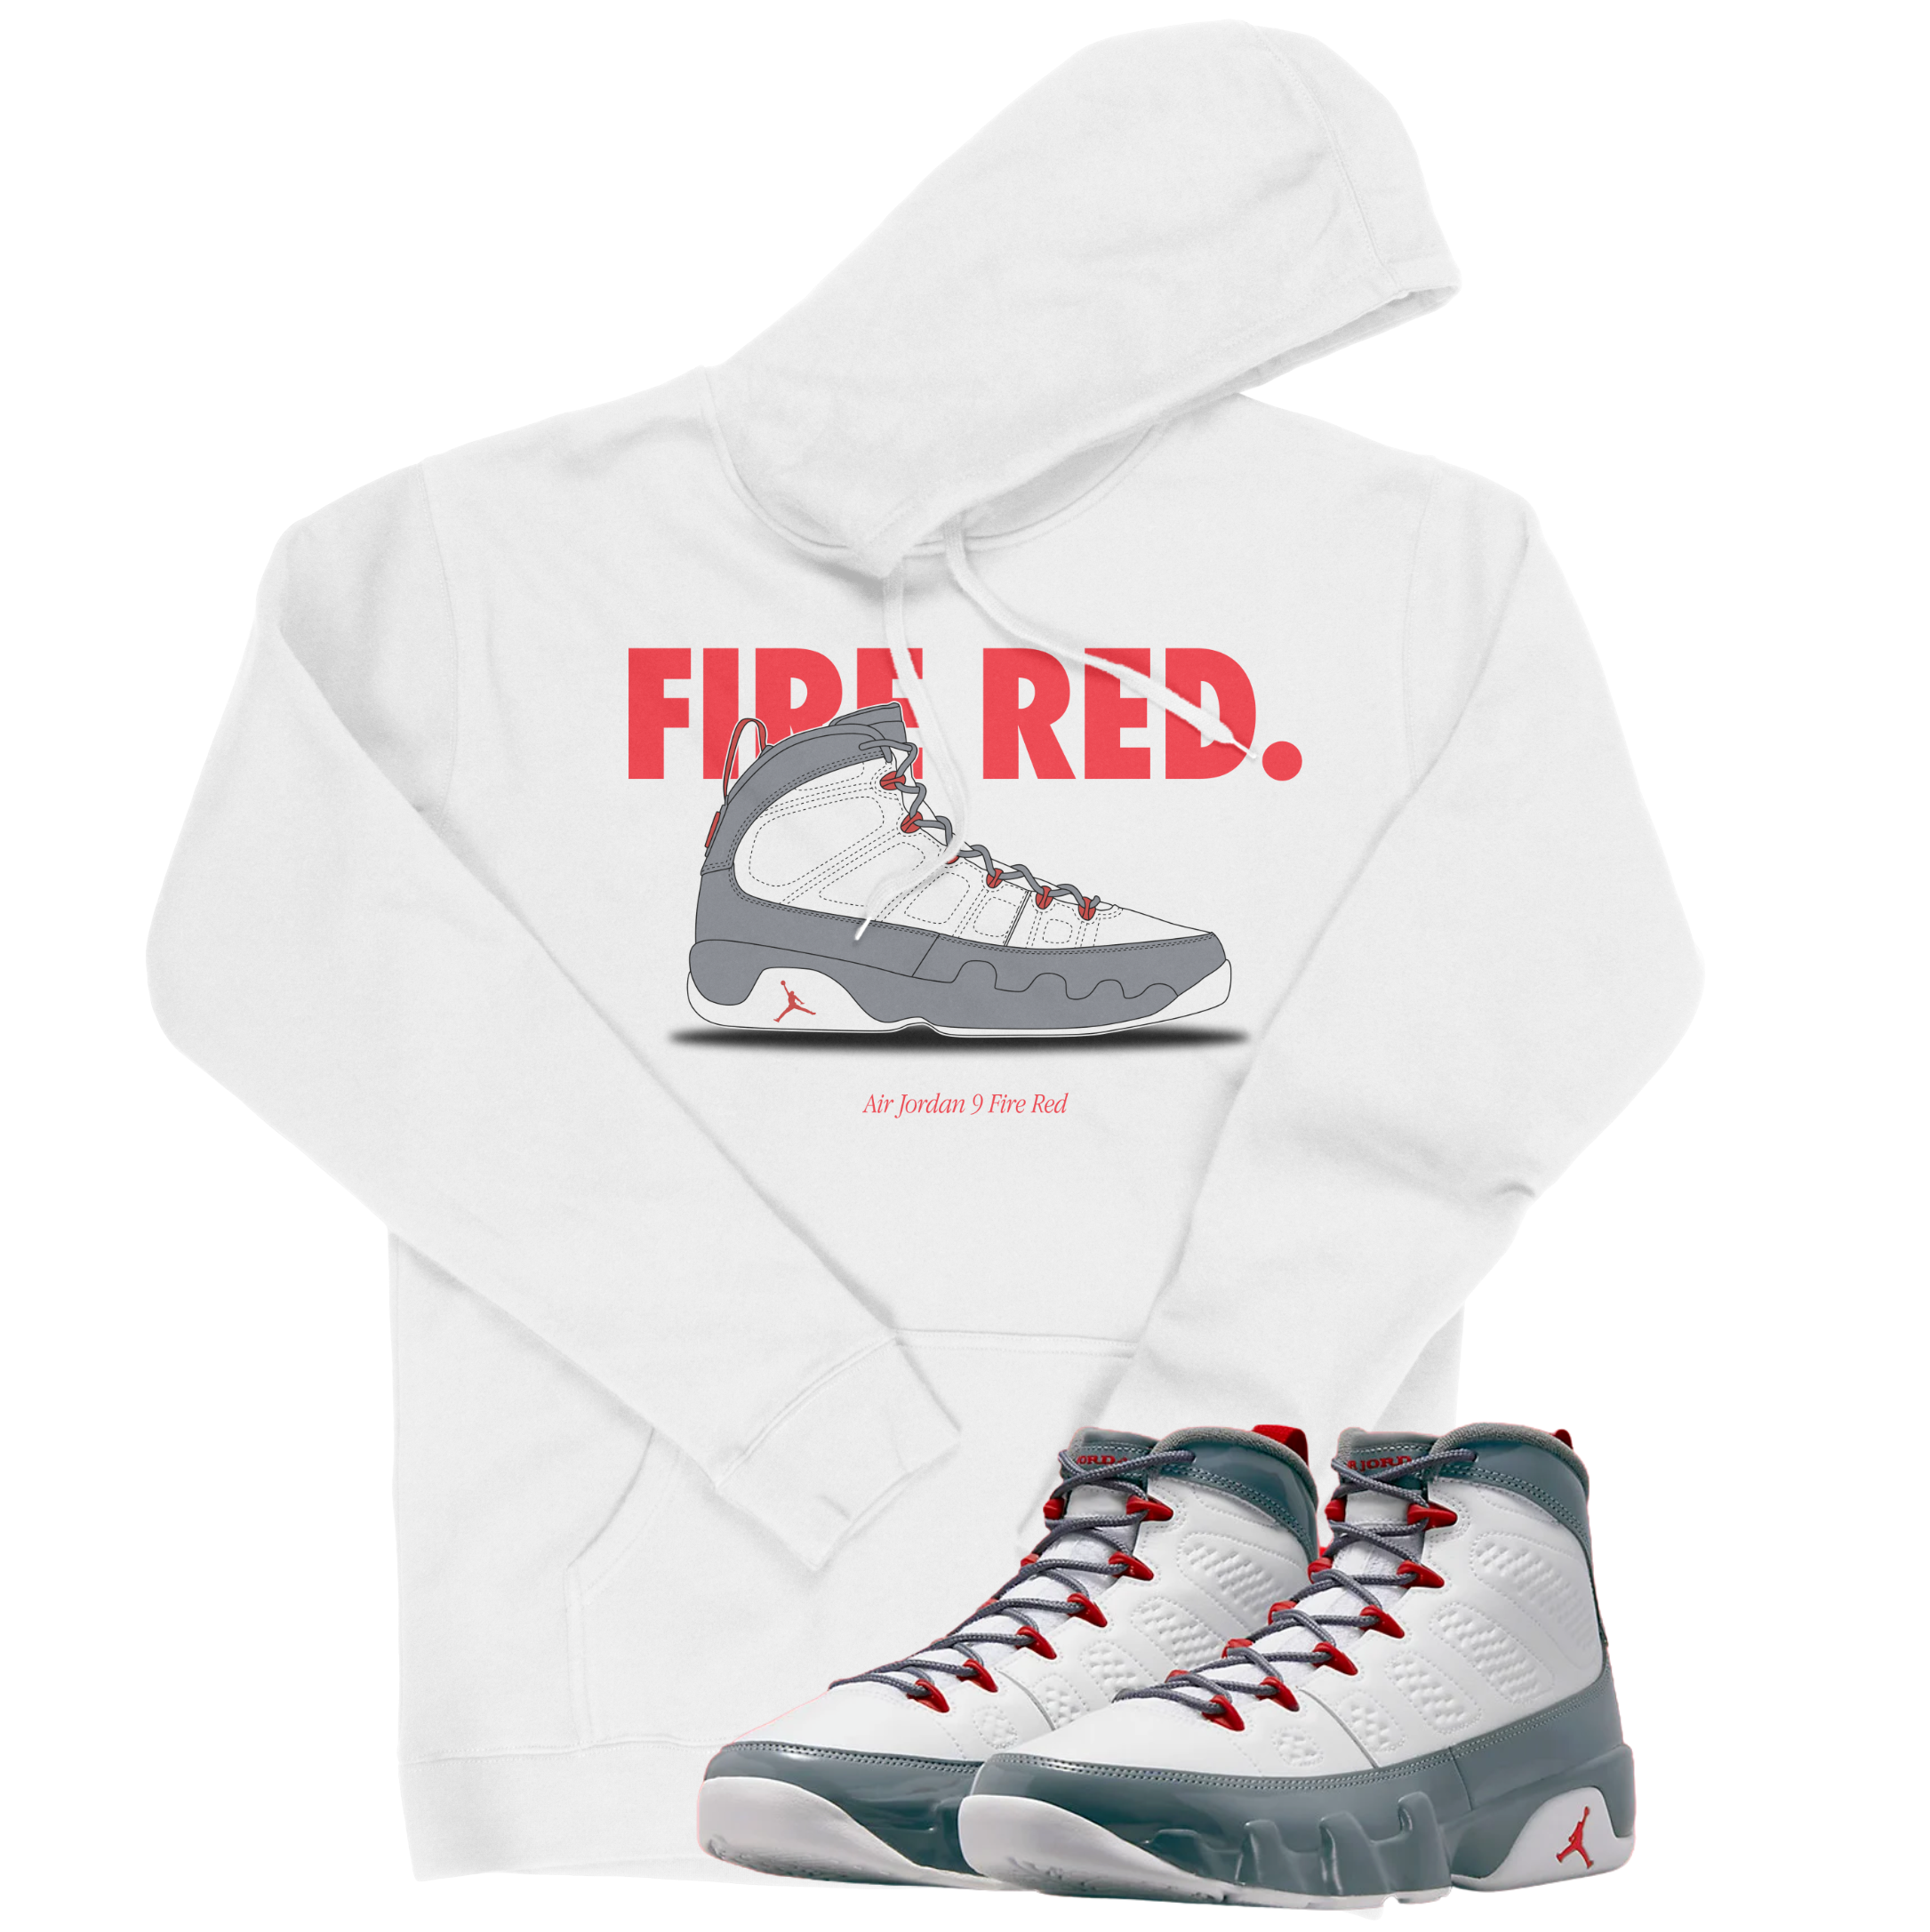 Air Jordan 9 Fire Red I Nickname Hoodie | Air Jordan 9 Fire Red | Sneaker Match | Jordan Matching Outfits